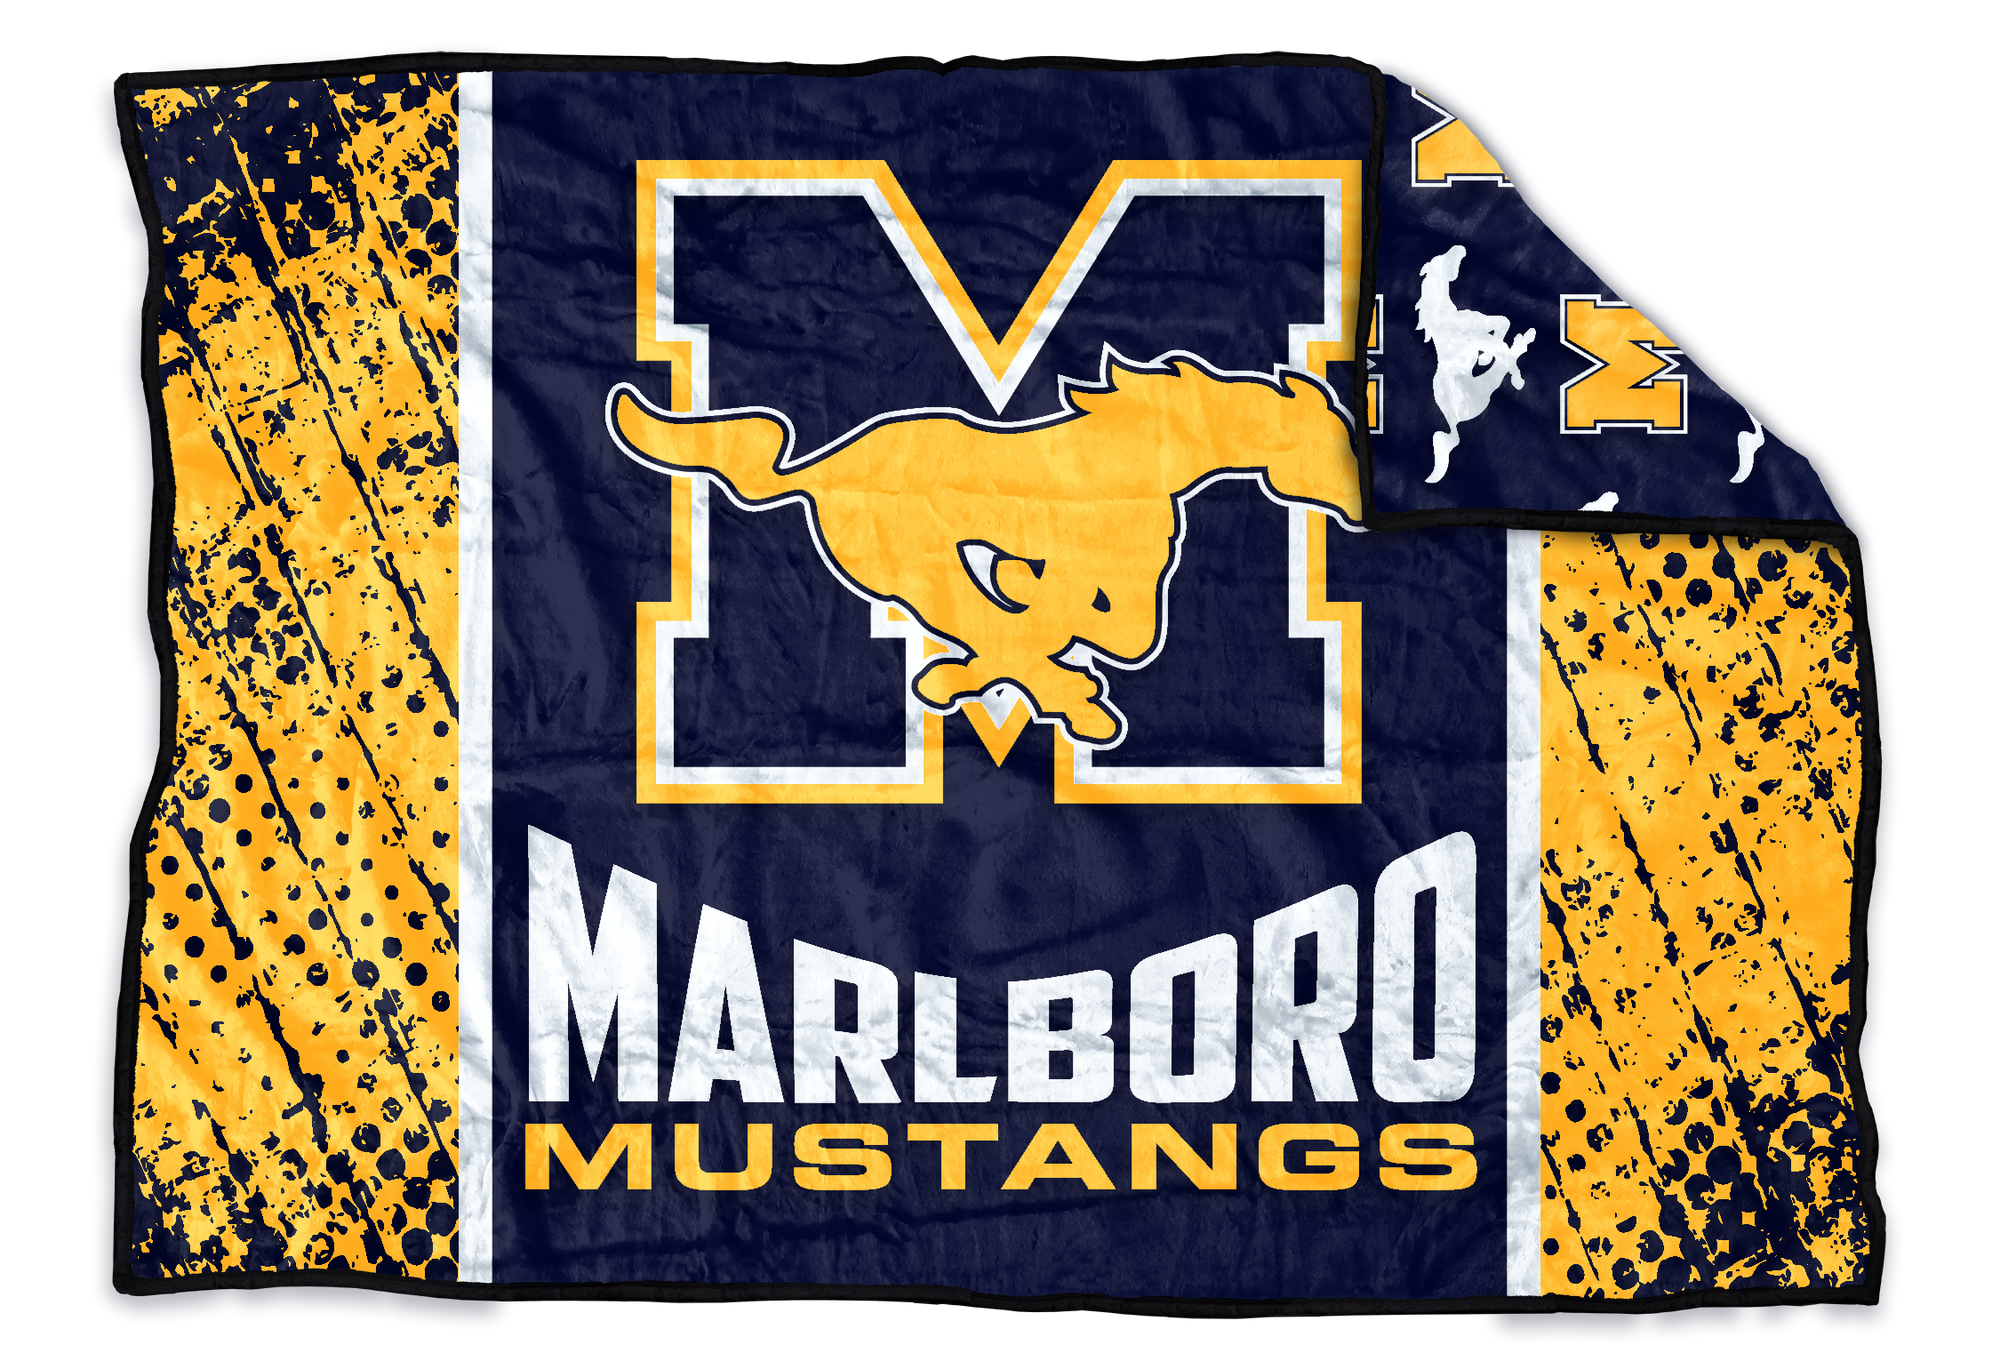 Marlboro Mustangs